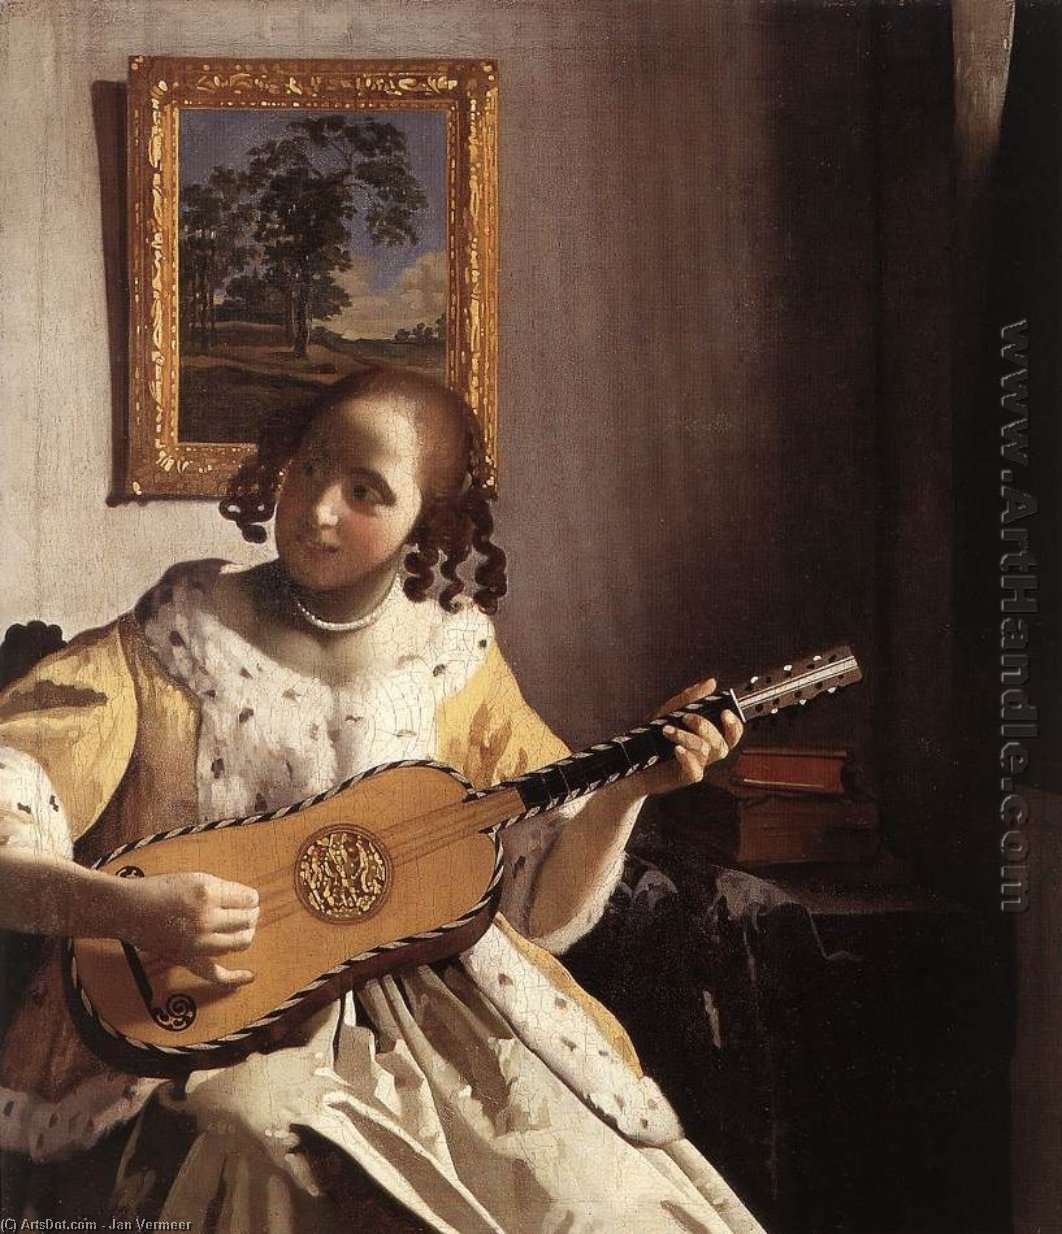 WikiOO.org - Encyclopedia of Fine Arts - Lukisan, Artwork Jan Vermeer - The Guitar Player